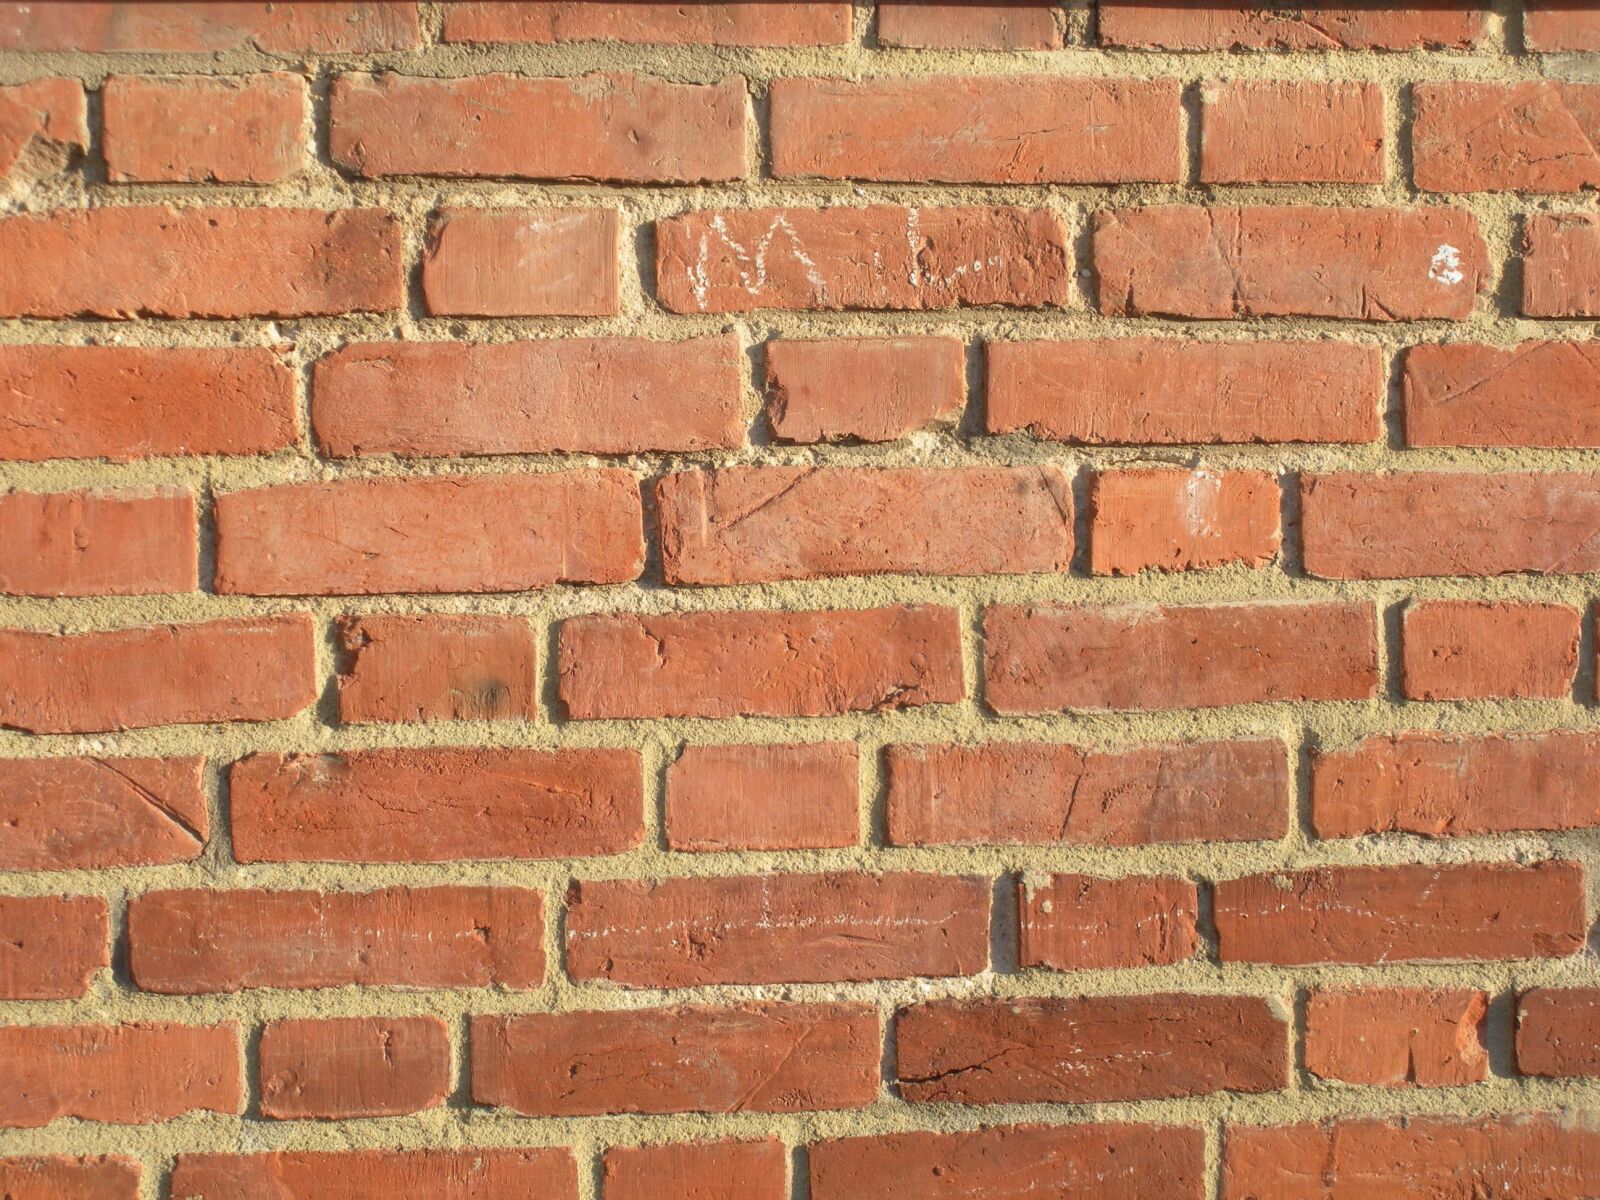 Nikon Coolpix S550 sample photo. Brick wall, brick, brick photography